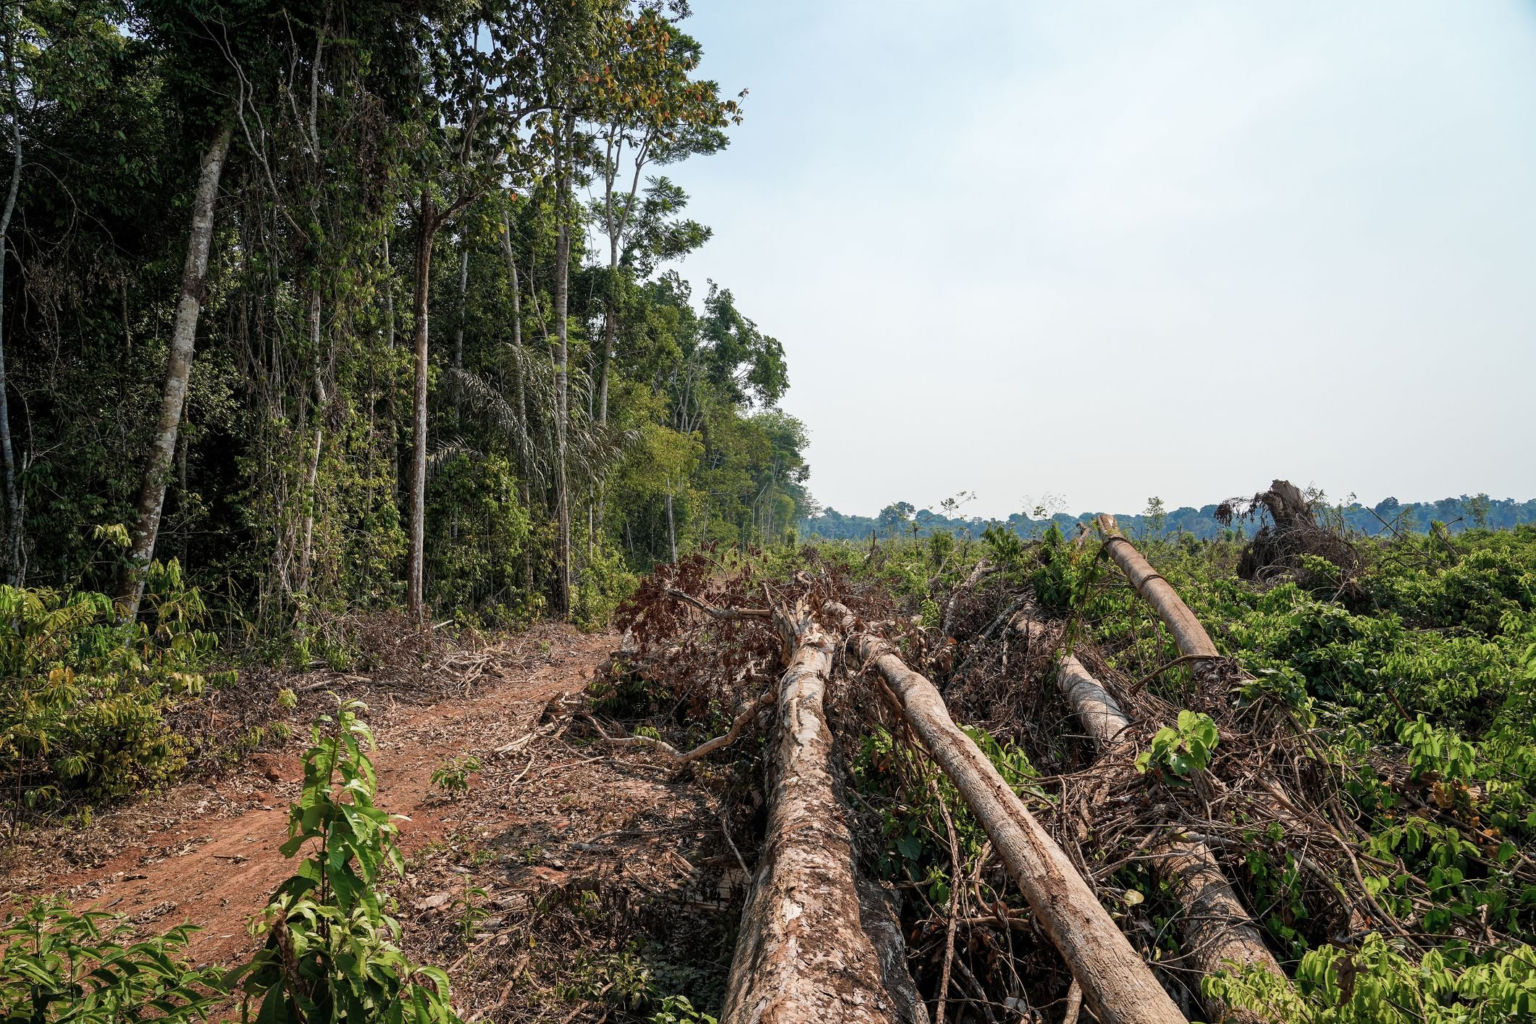 amazonia-registra-a-menor-taxa-de-desmatamento-dos-ultimos-5-anos-banner.png